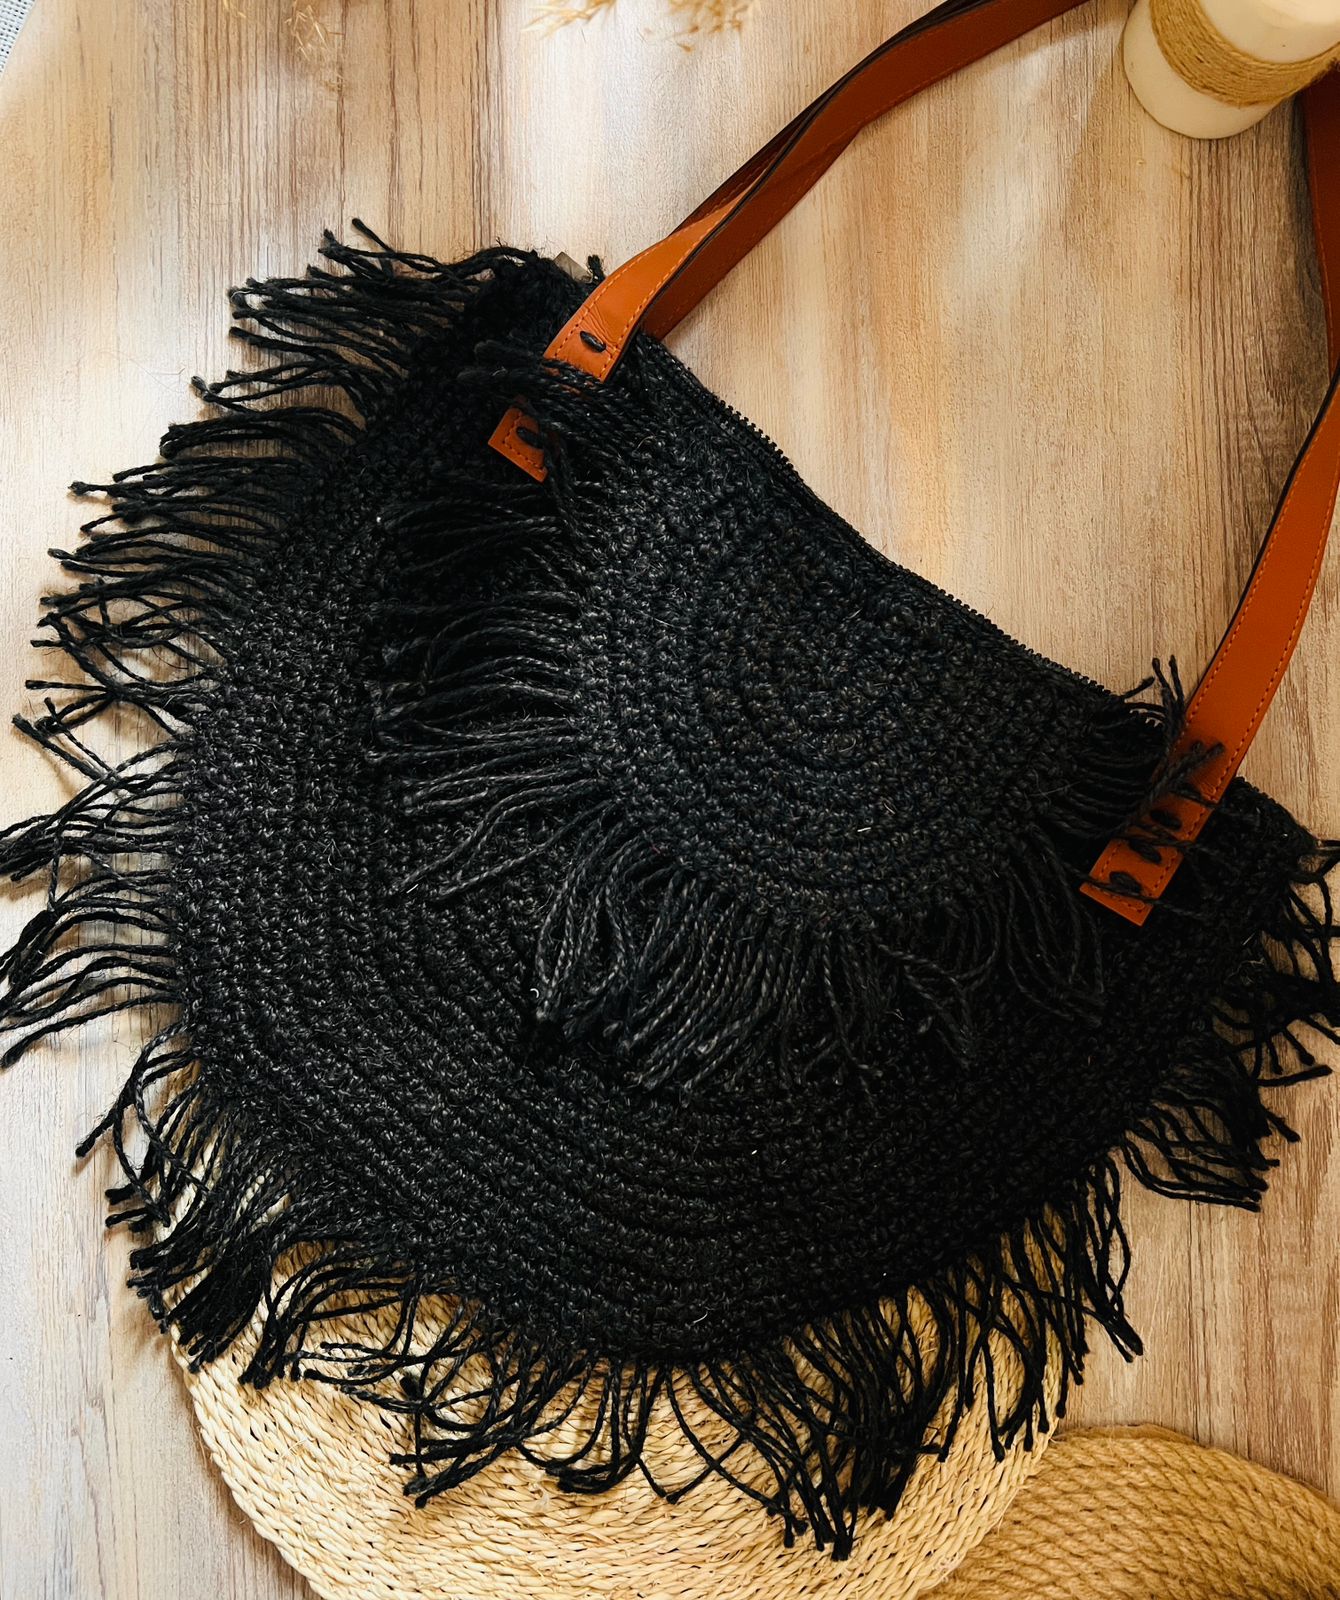 Crochet Handbag 7